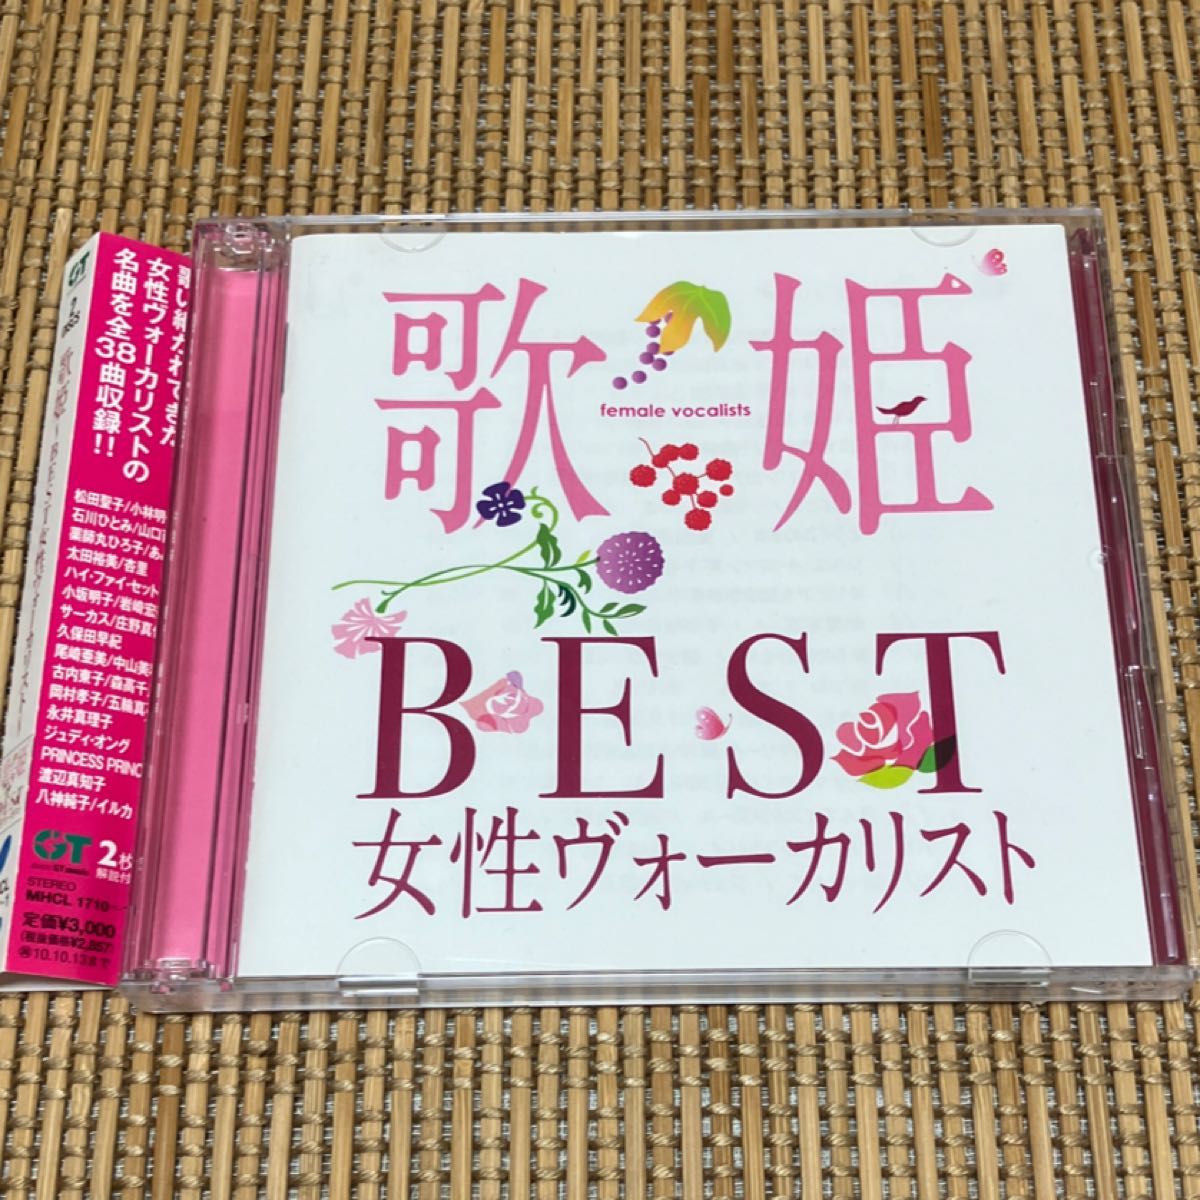 歌姫 BEST女性ヴォーカリスト CD (オムニバス) 松田聖子、小林明子、石川ひとみ、薬師丸ひろ子